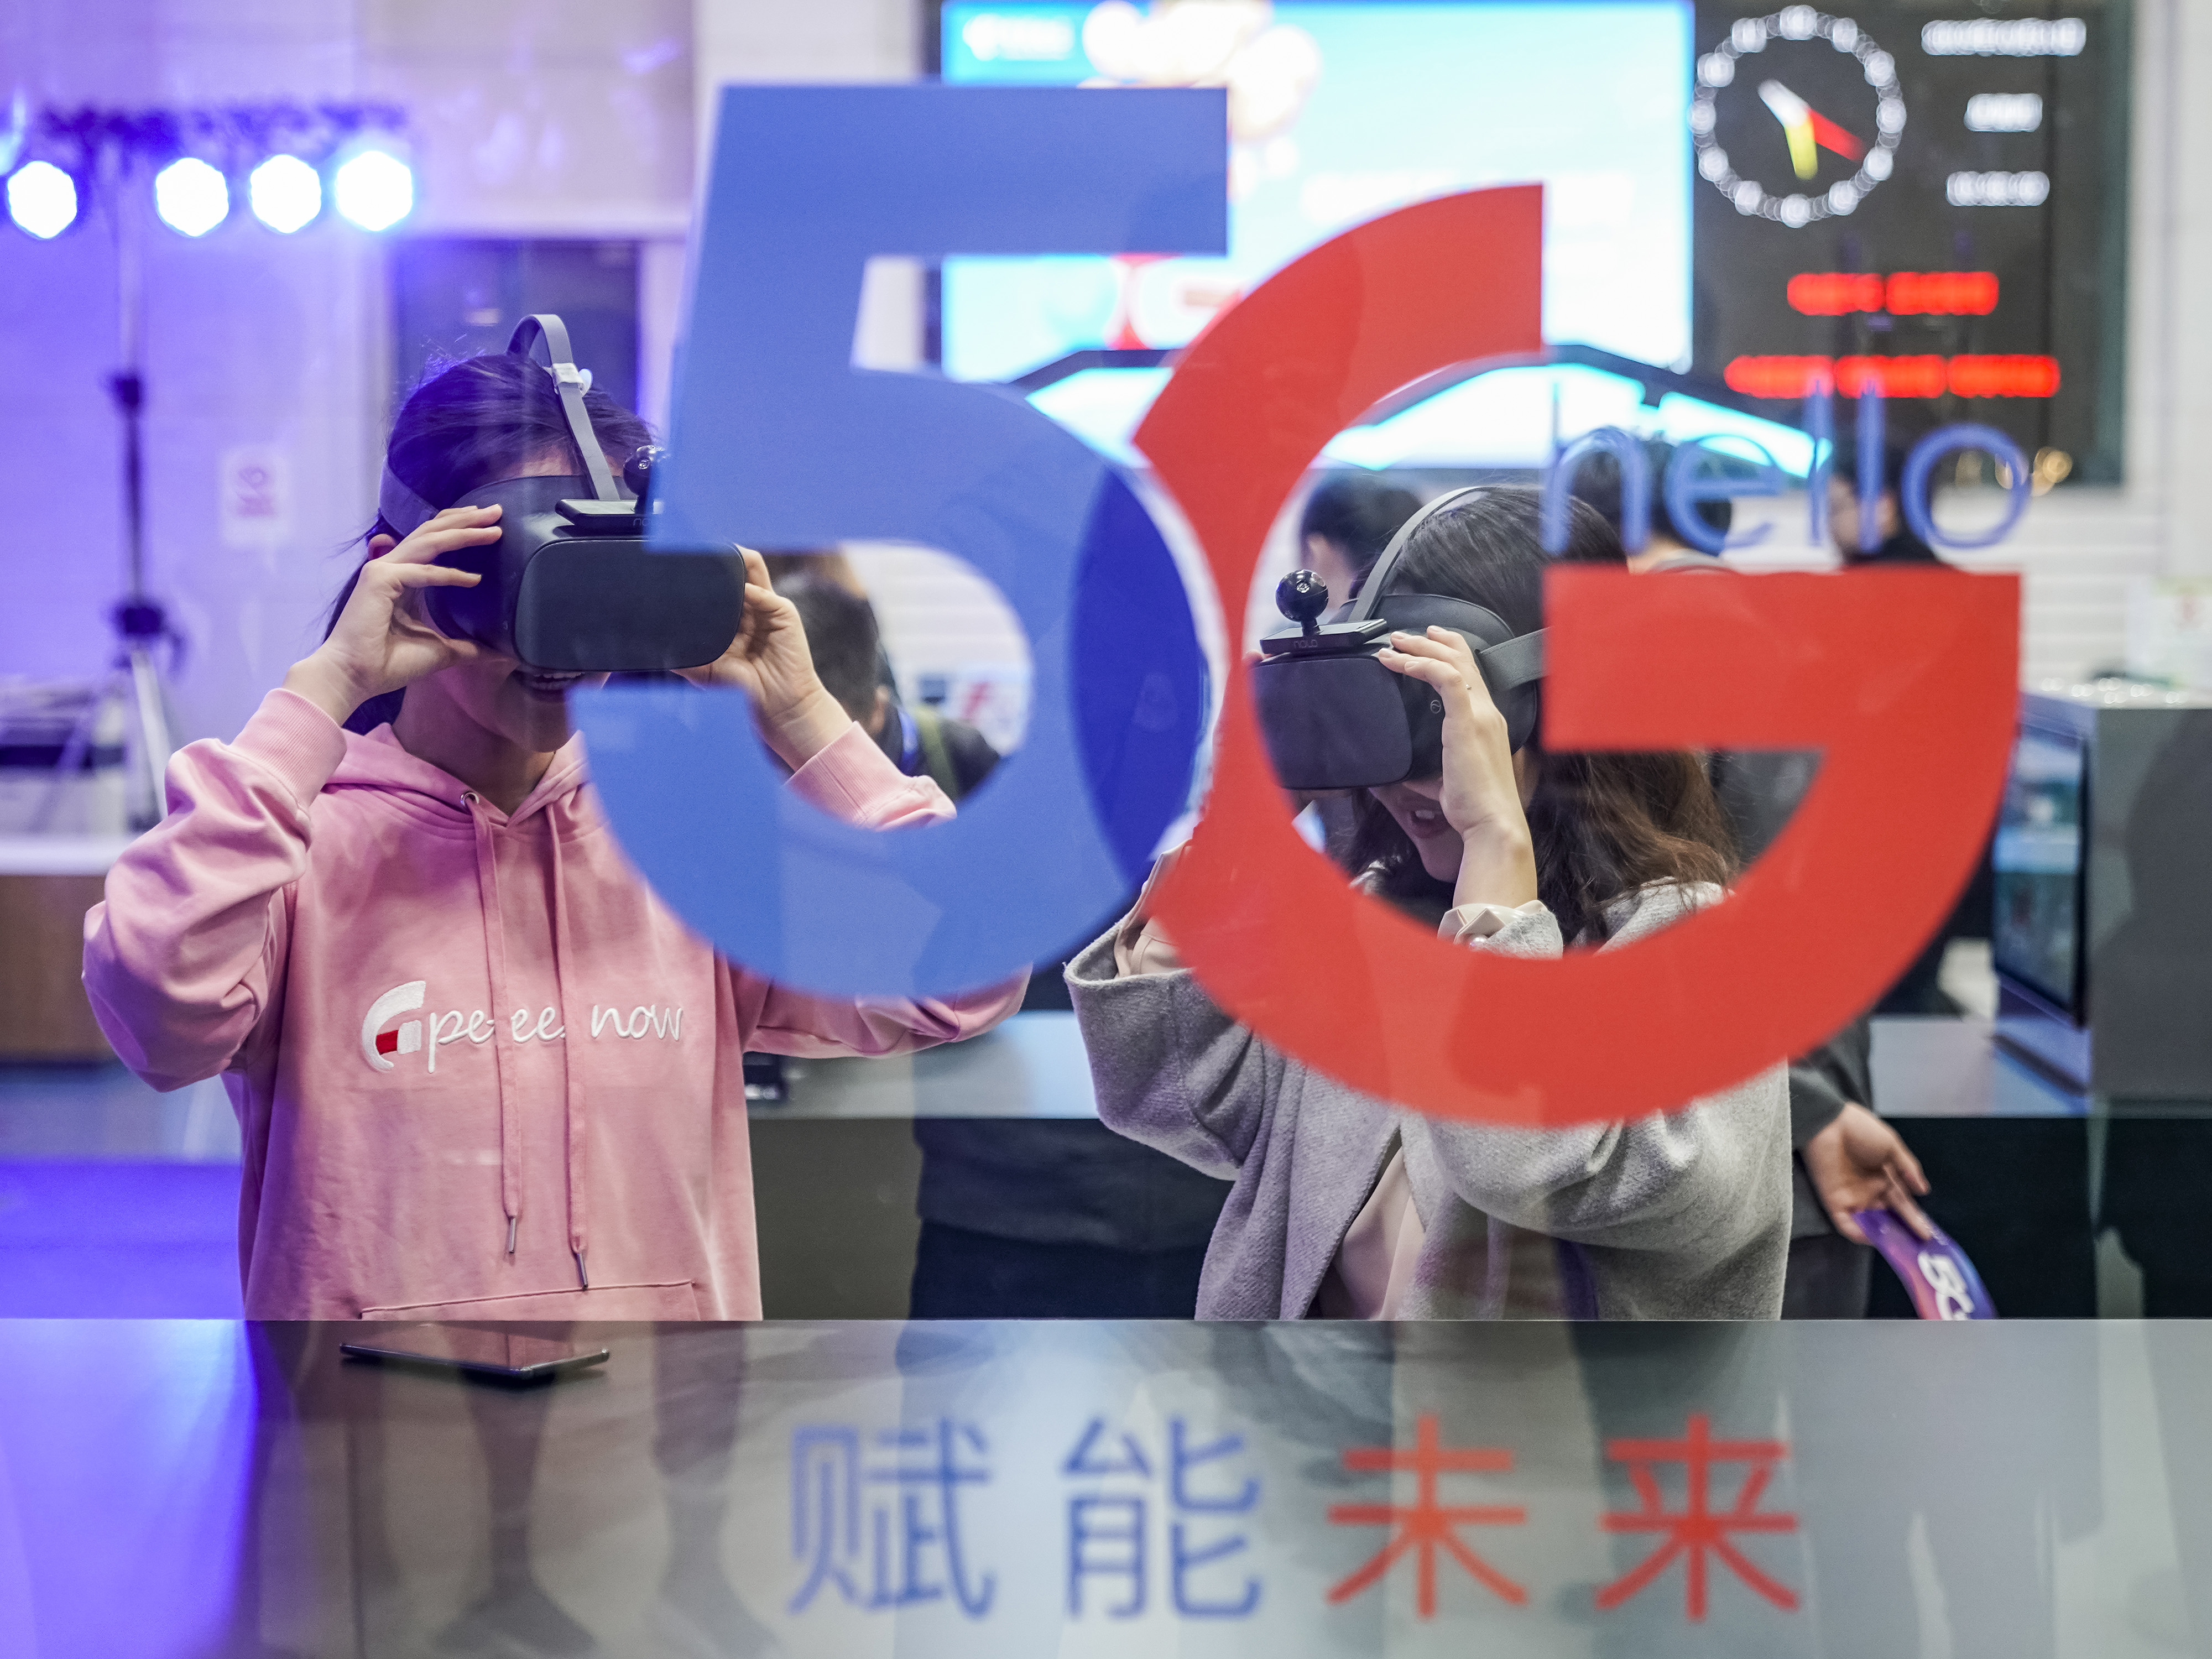 北京 5G 网络建设现状及体验：全面加速，覆盖范围稳步扩大  第8张